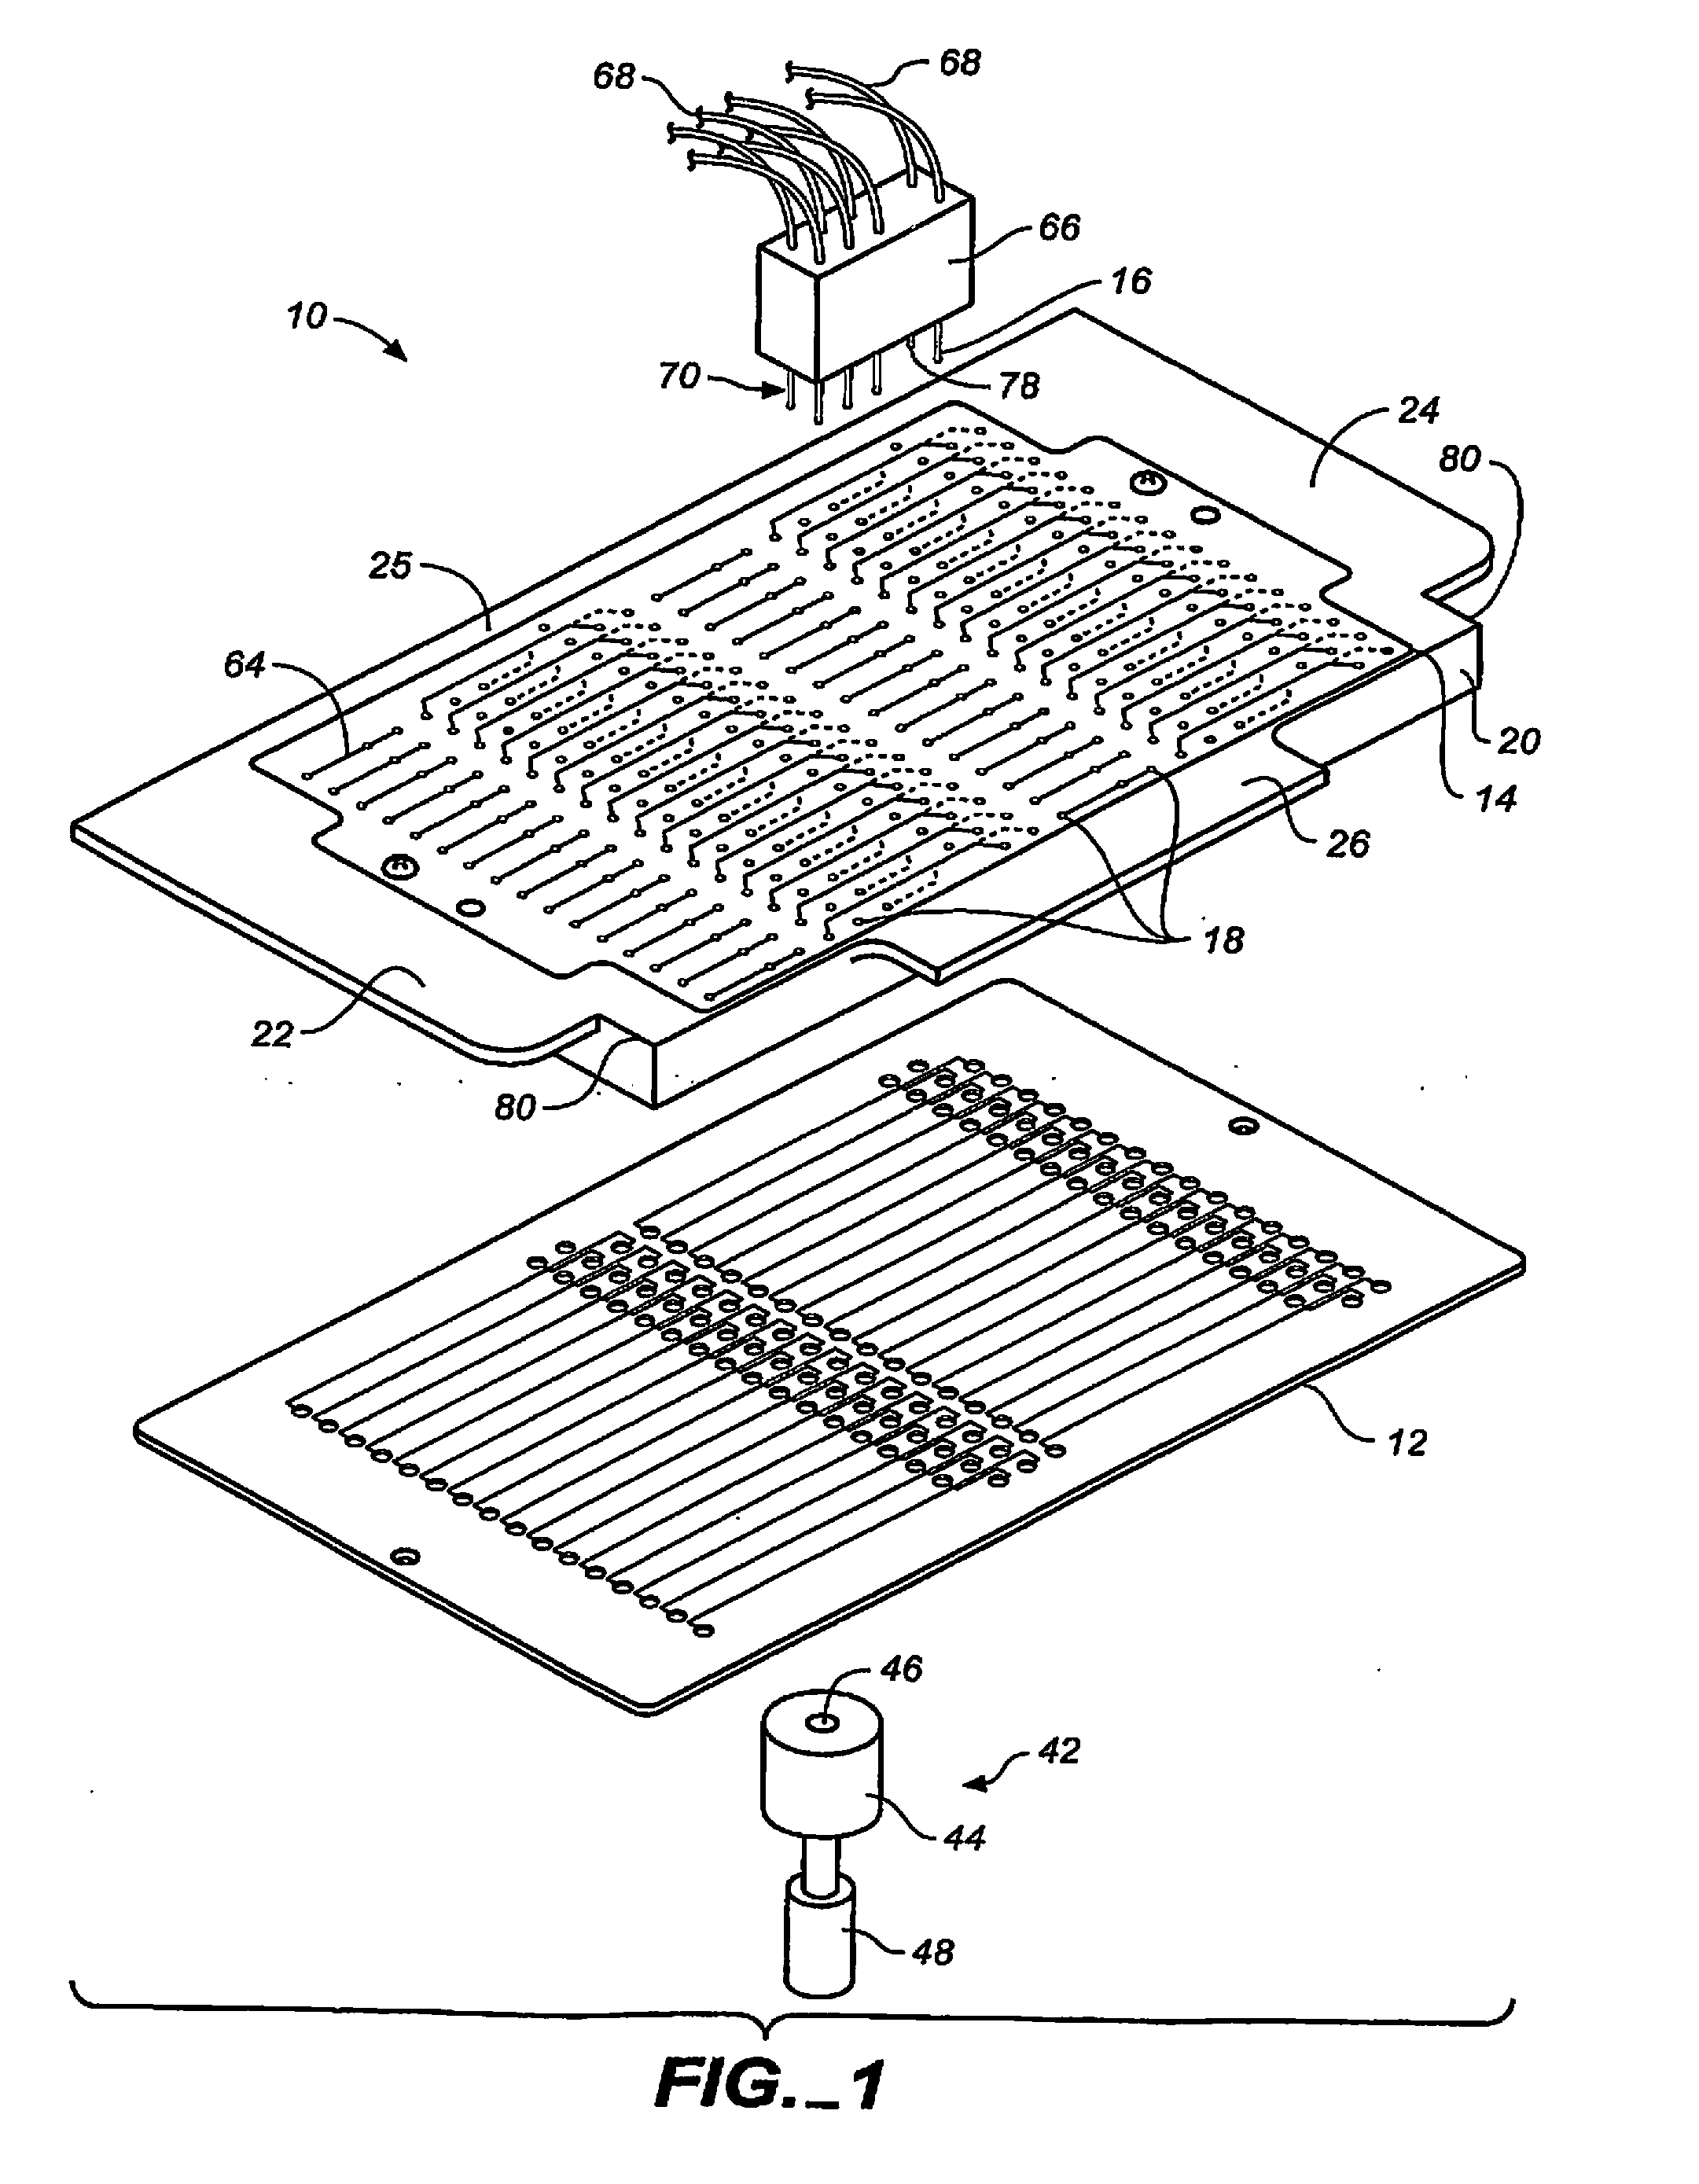 Microfluidic analytical apparatus